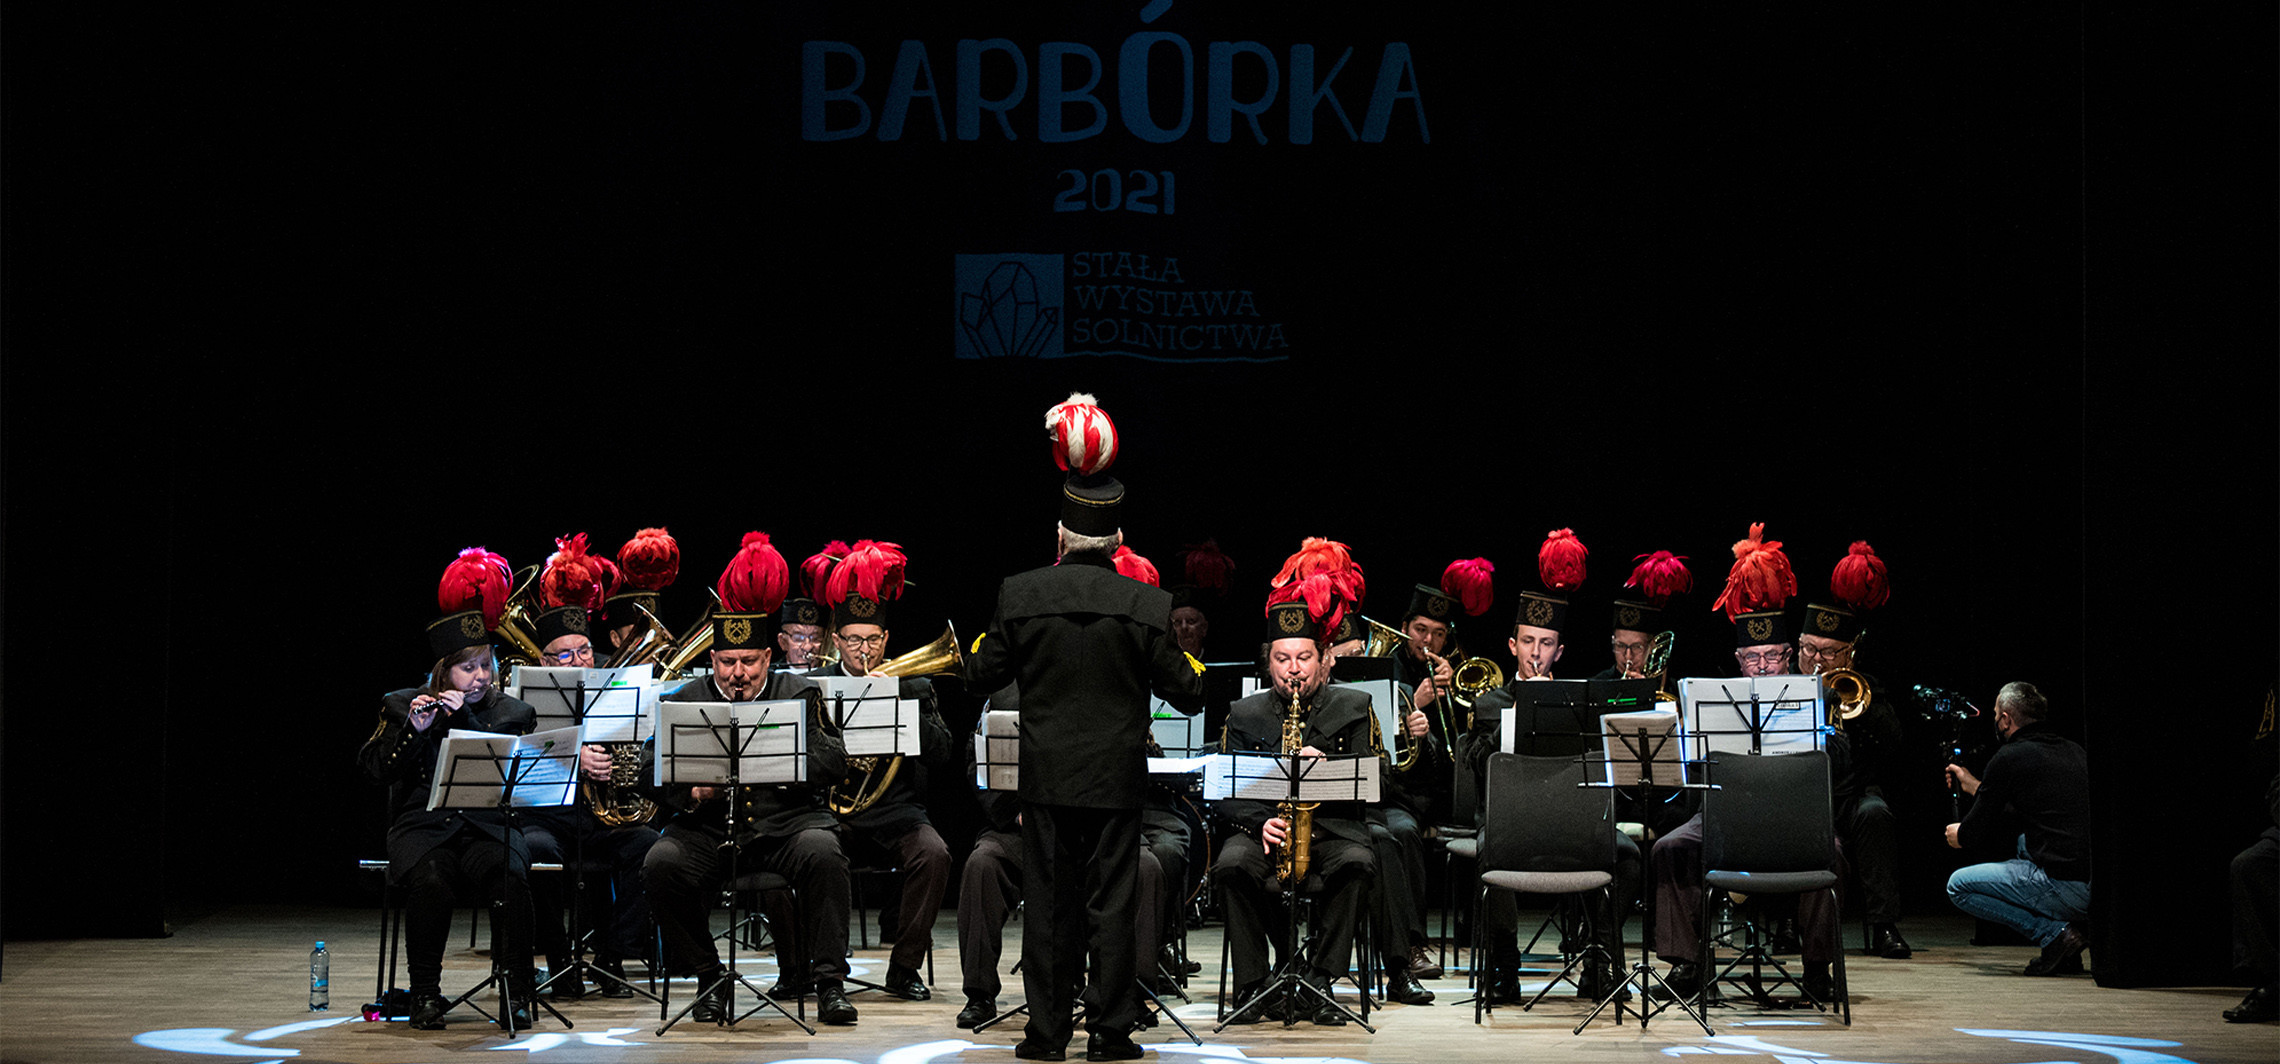 Inowrocław - Barbórkowy koncert w teatrze. Na scenie orkiestra